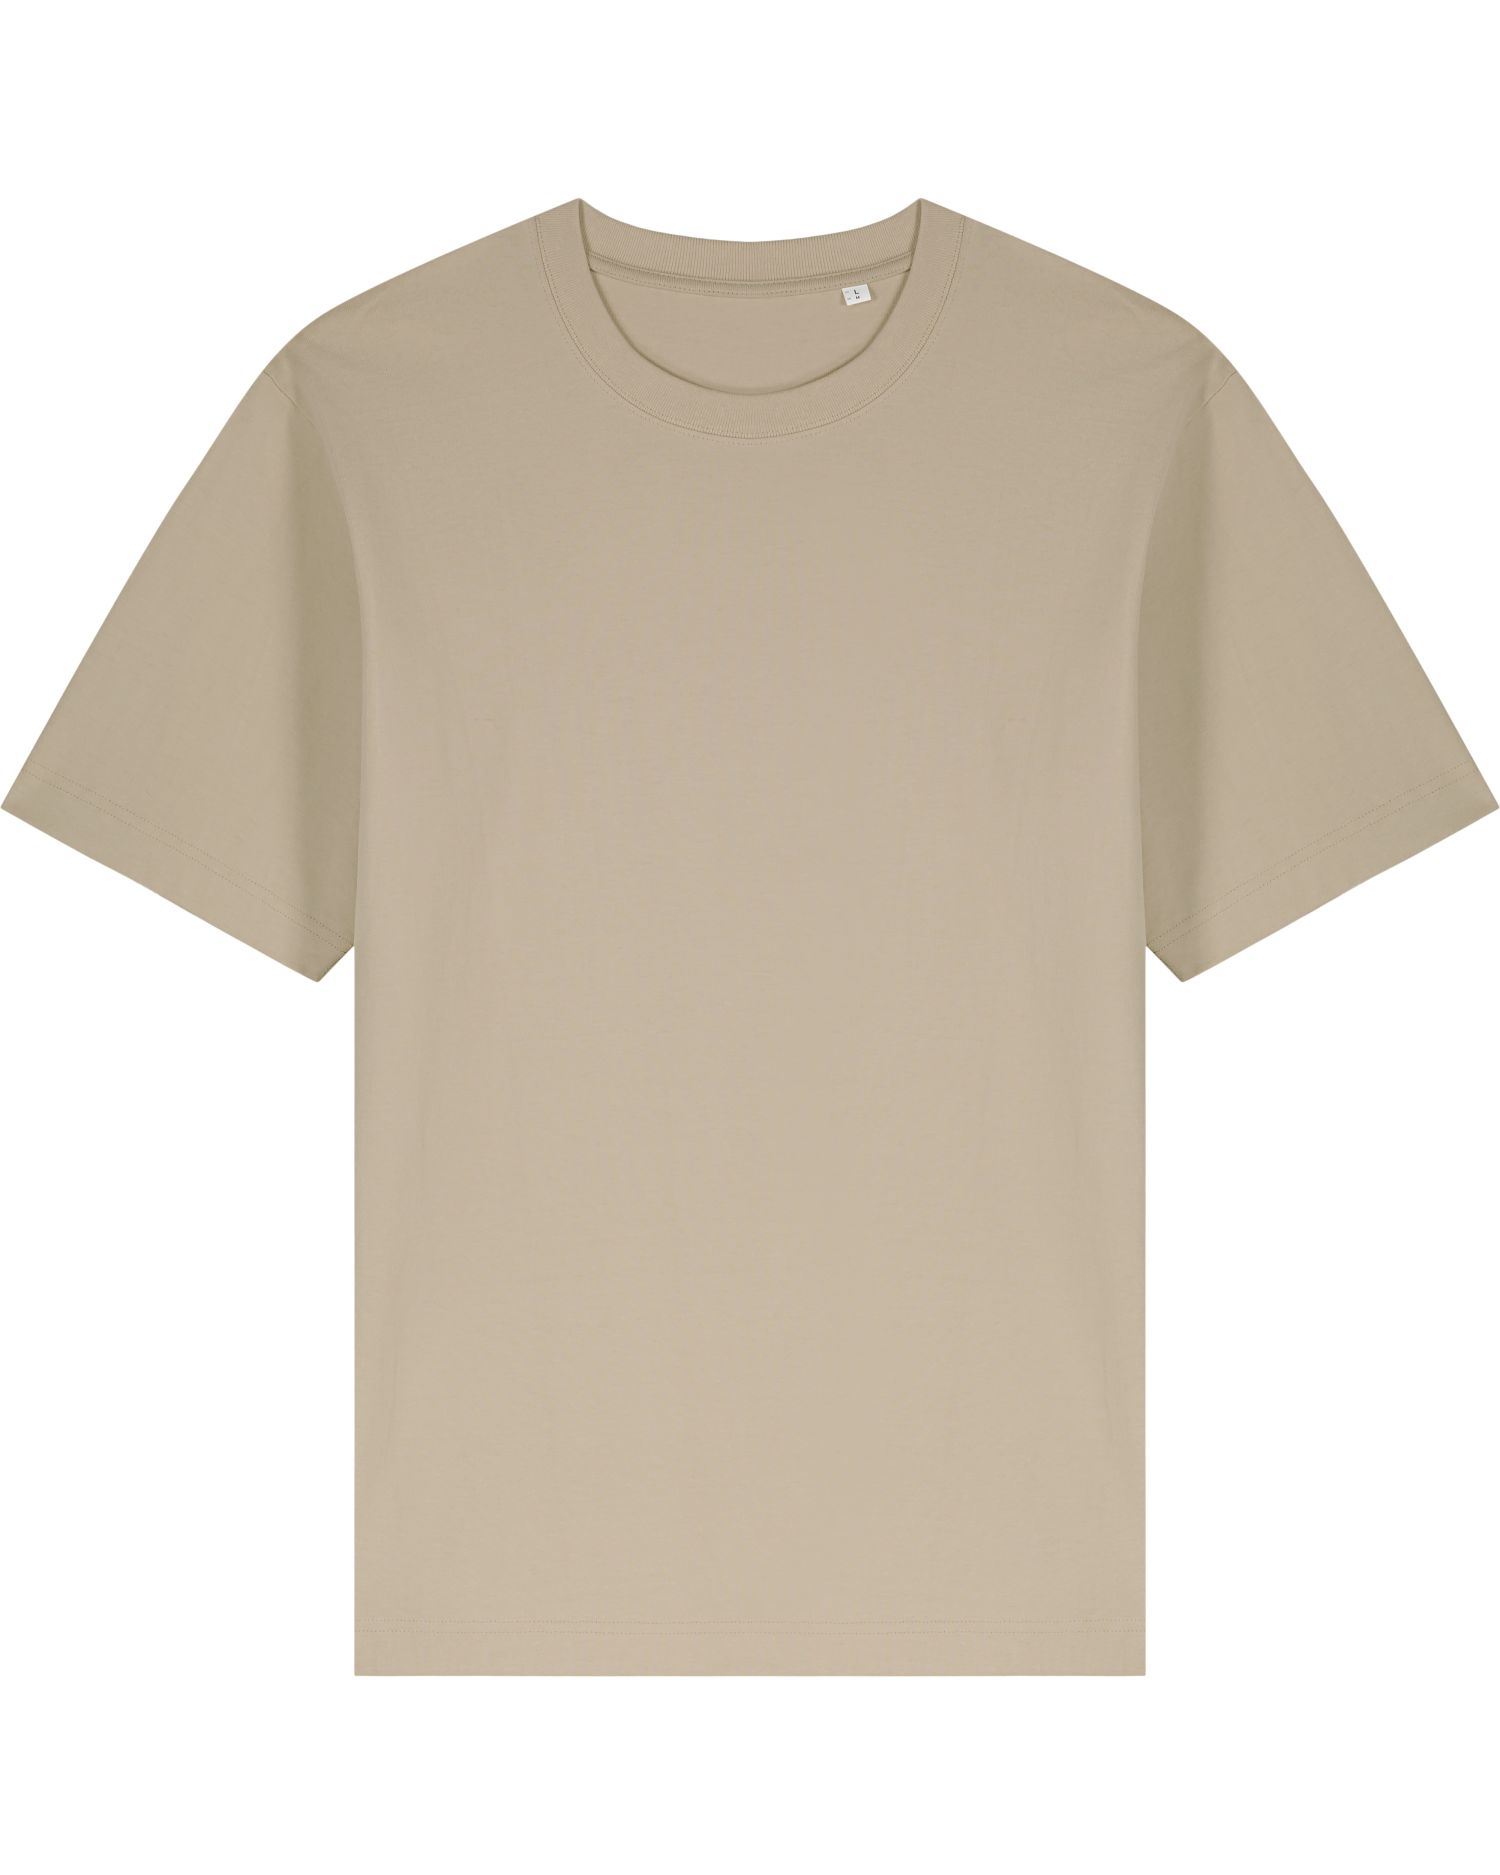 T-Shirt Freestyler in Farbe Desert Dust